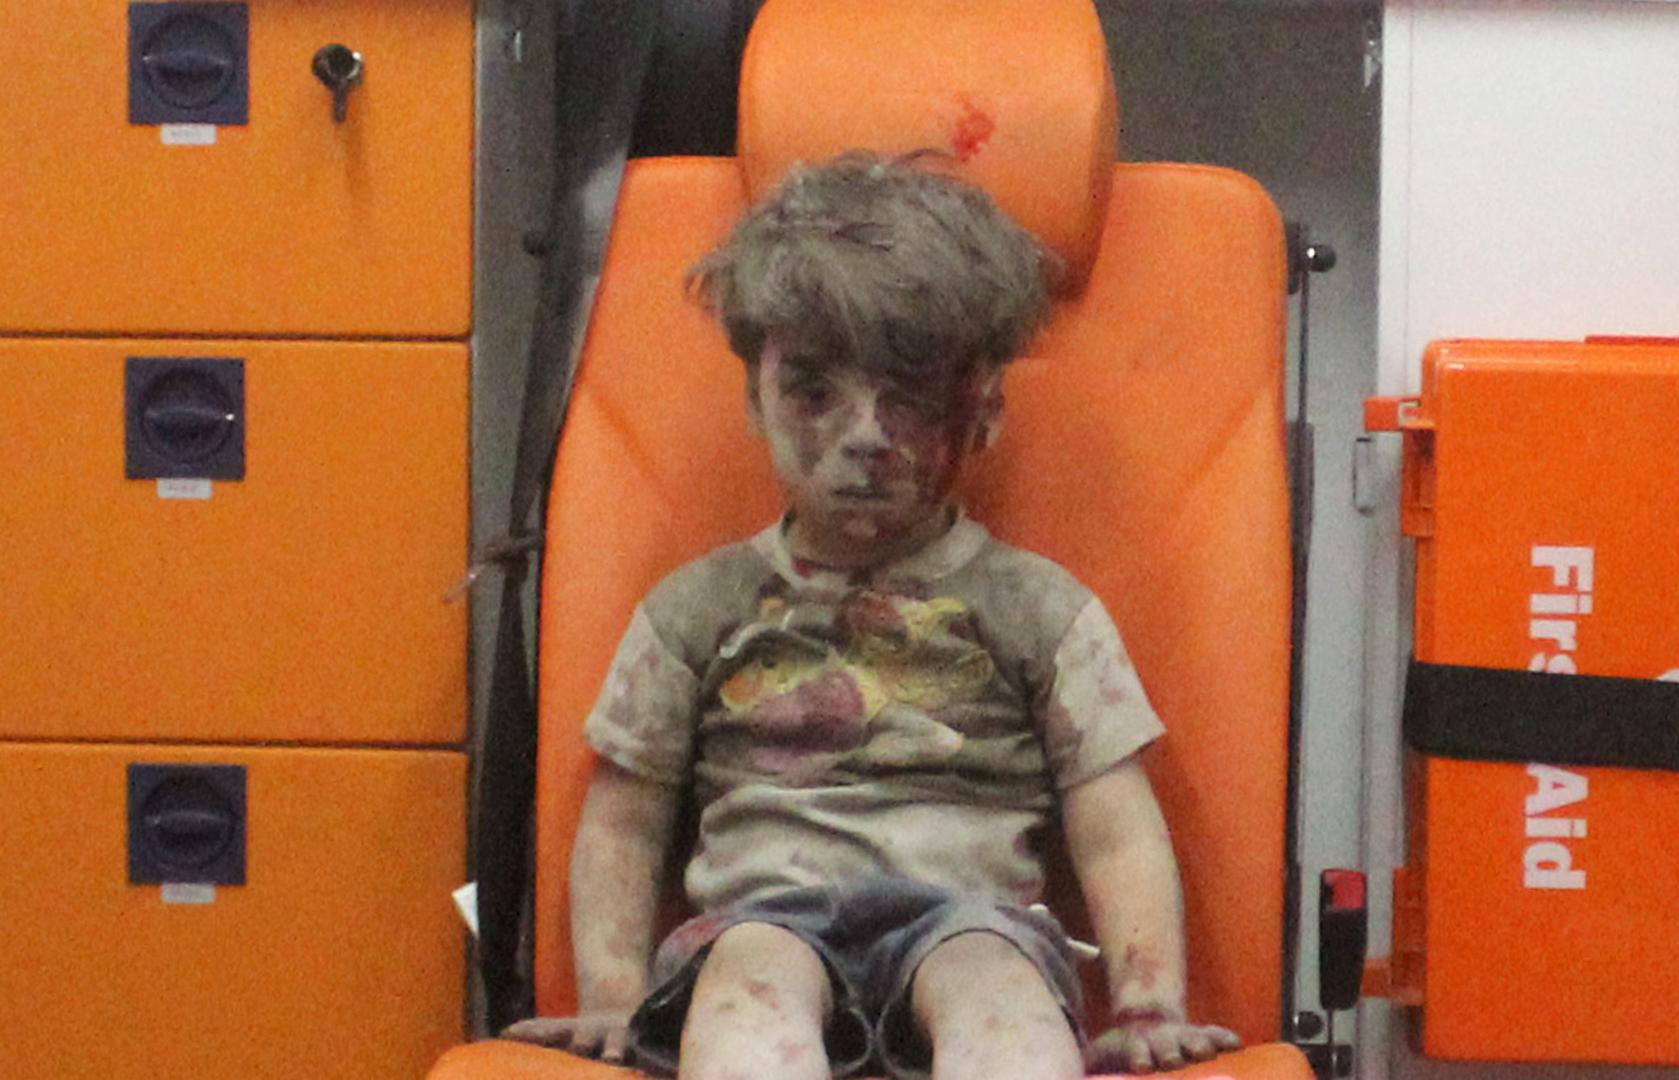 Omran Daqneesh dječak je koji je ranjen u ratu u Siriji 2016. godine kada je imao samo pet godina. Neki su ga proglasili i licem koje simbolizira sve užase rata između vladinih snaga i pobunjenika u koji su se kasnije uključile i velike svjetske sile